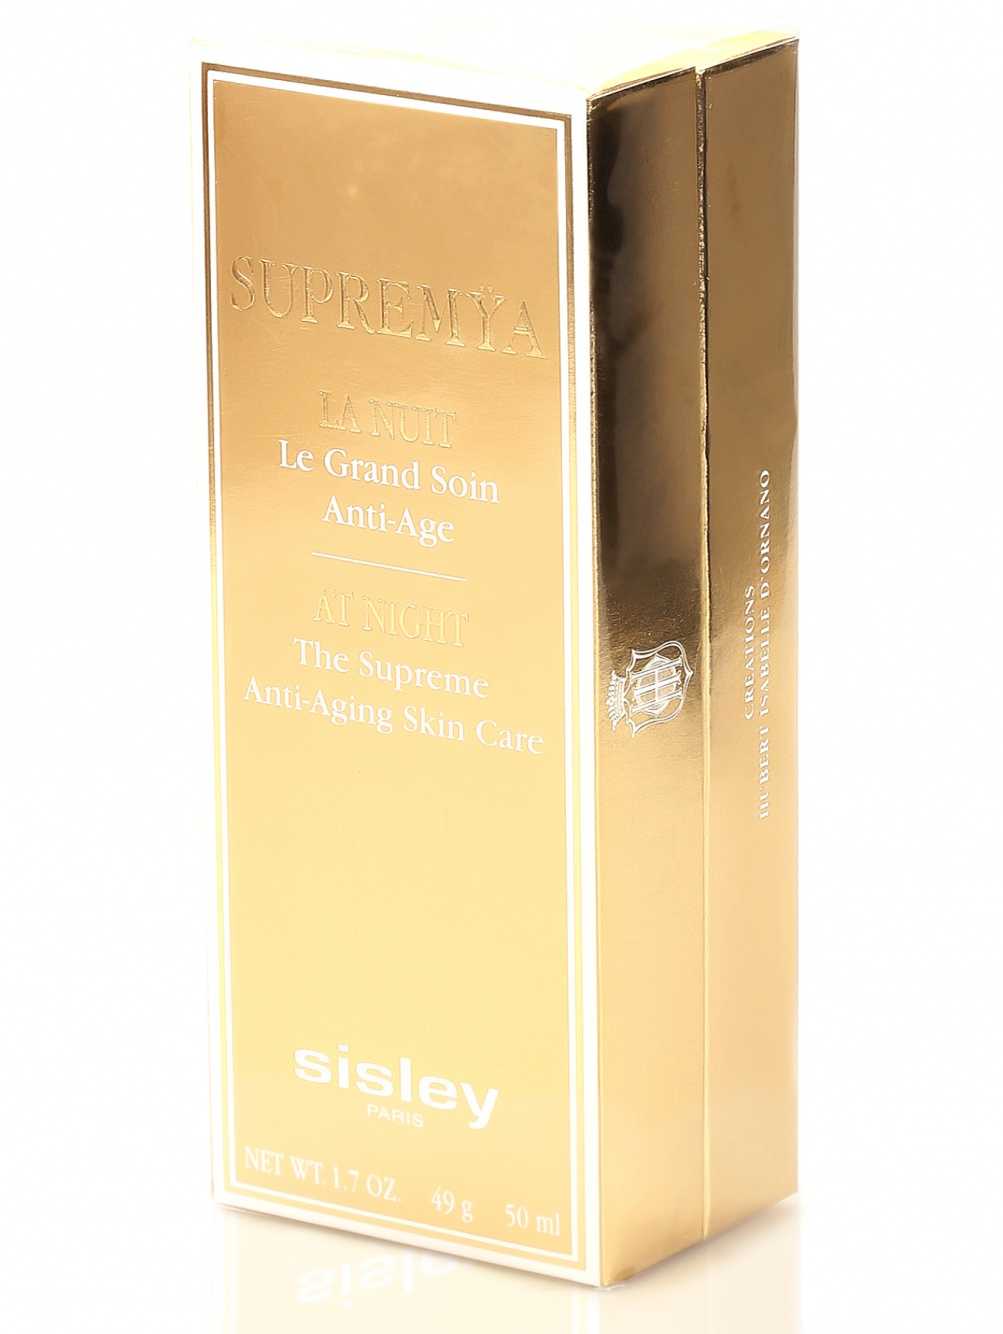 Бренд Sisley производит множество разной продукции – одежду и акссесуары, парфюмерию и косметику, о которой мы сегодня поговорим